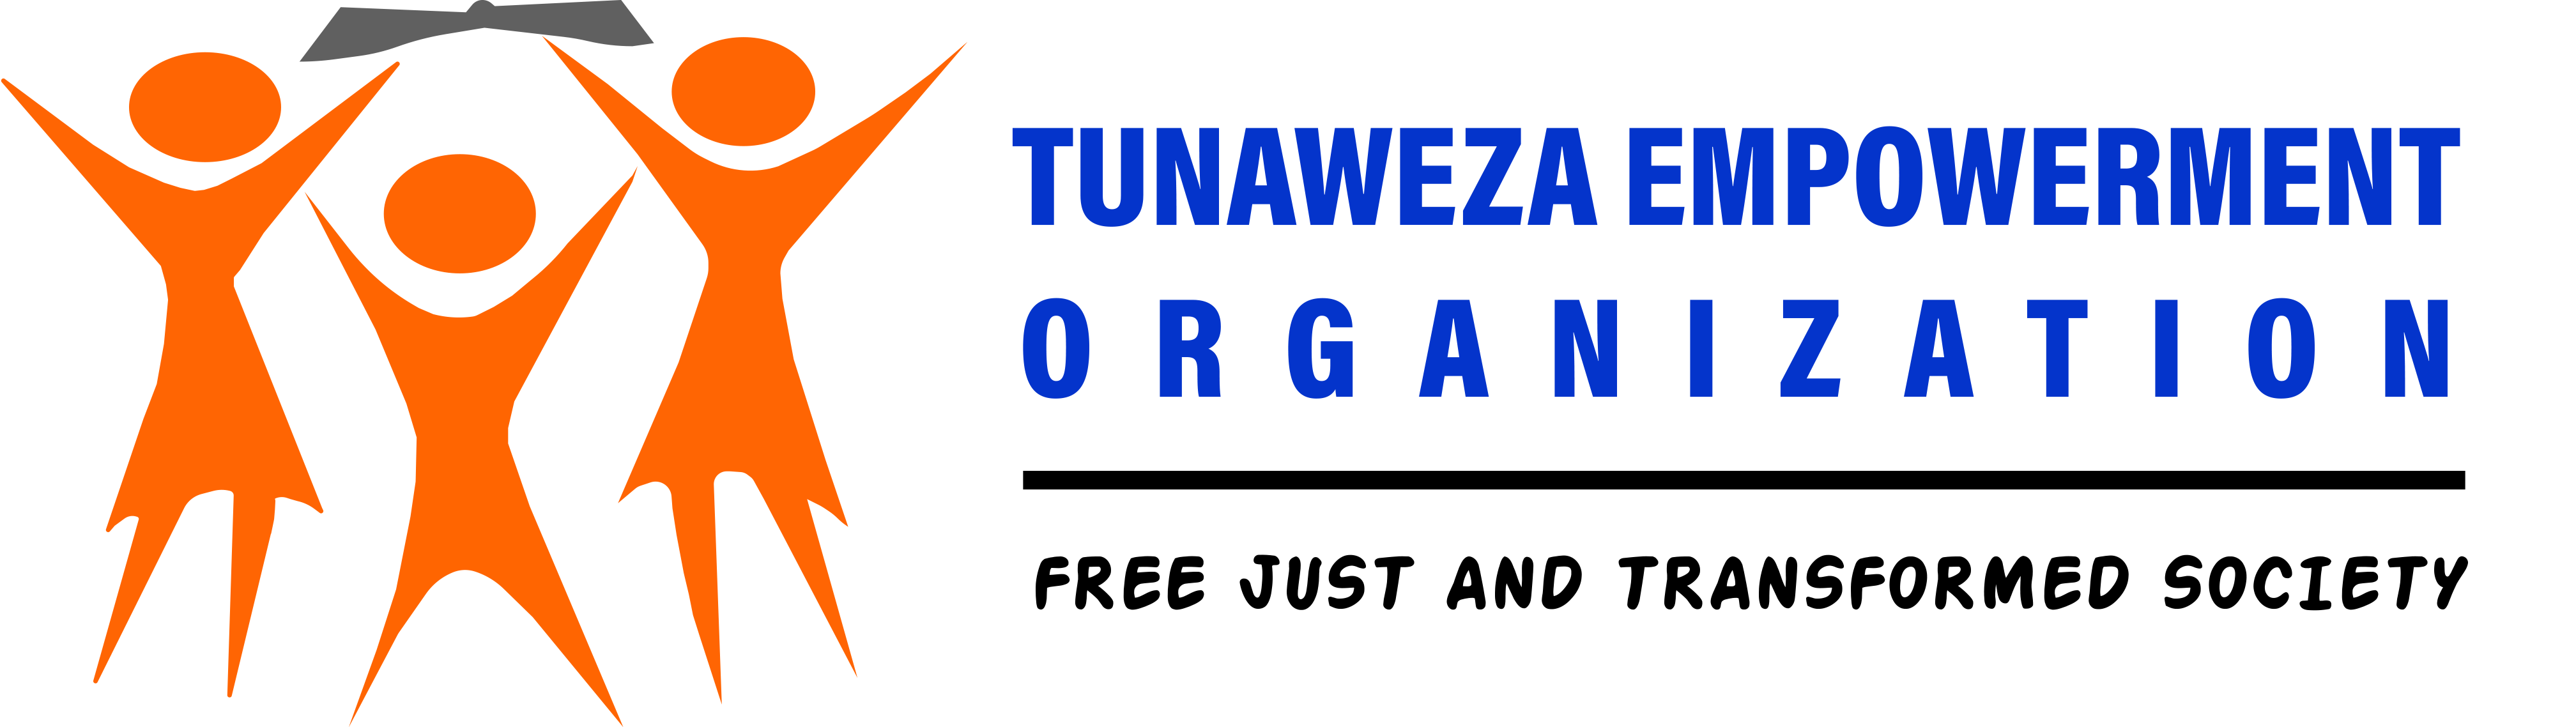 Tunaweza